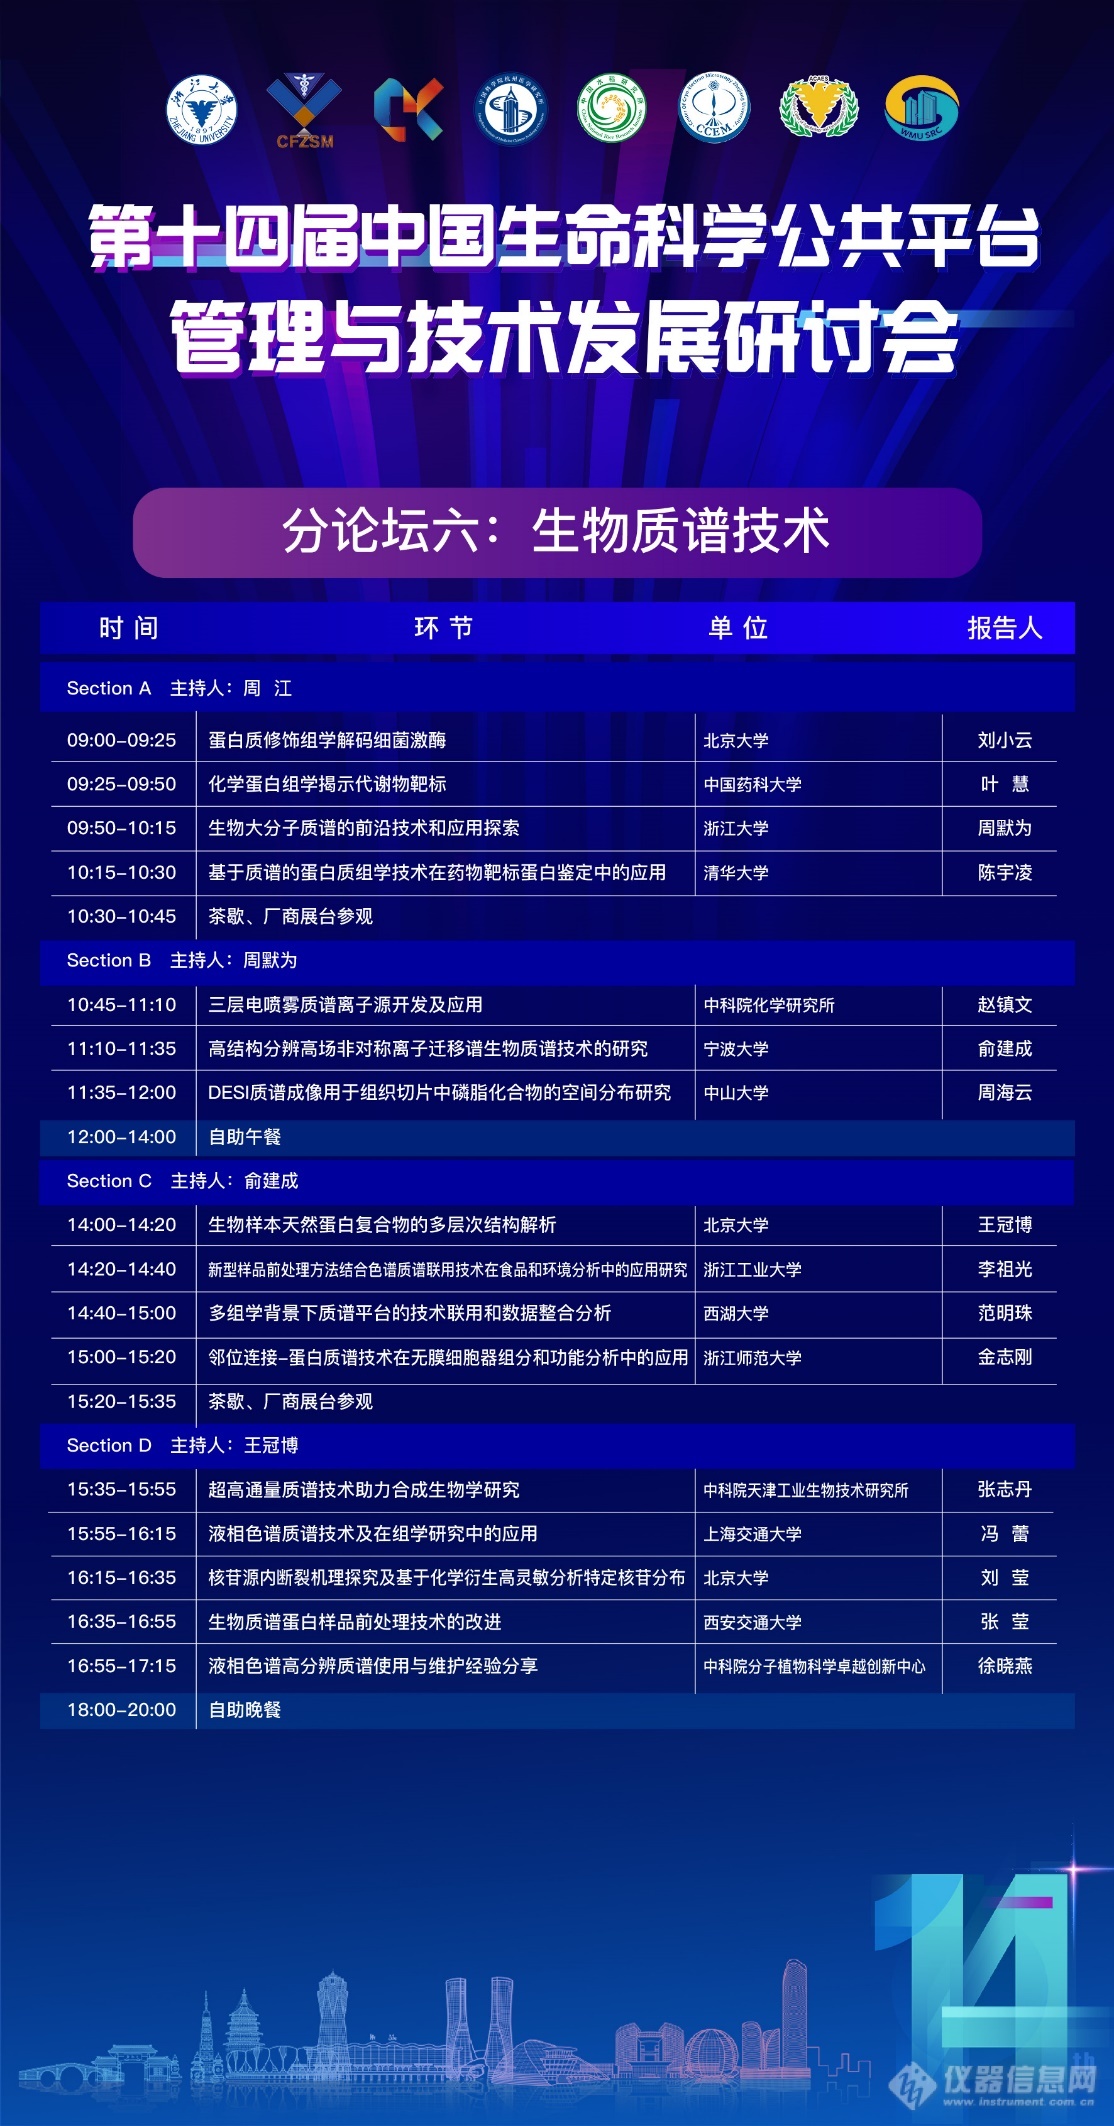 第十四届中国生命科学公共平台管理与技术发展研讨会第三轮通知